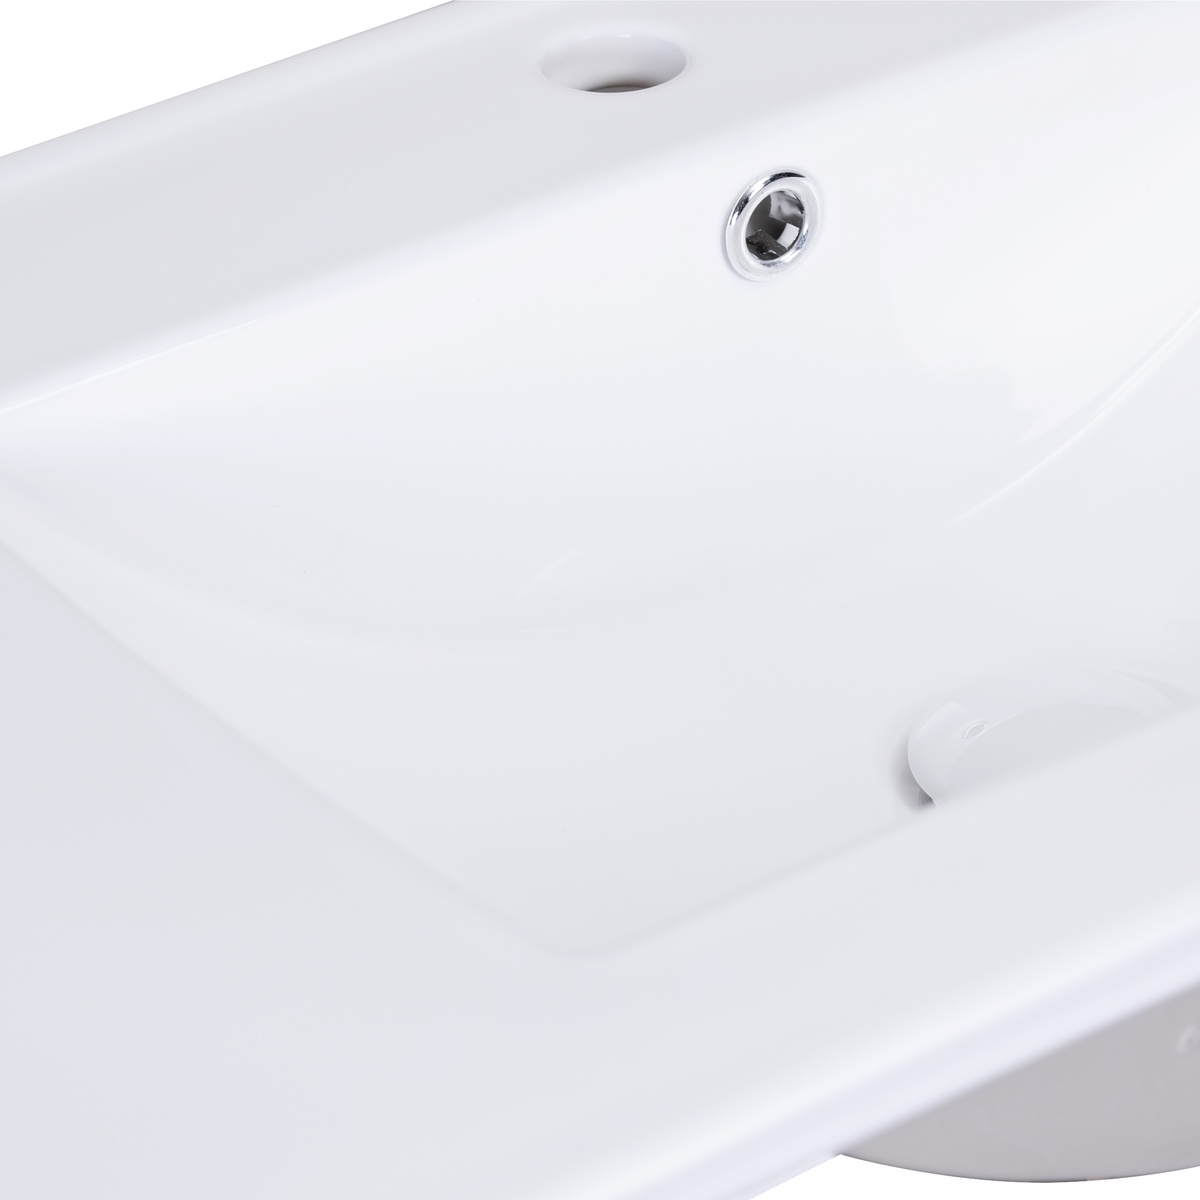 Умывальник врезной в ванную на столешницу 915мм x 470мм Q-TAP Albatross New белый прямоугольная QT0111750690RW